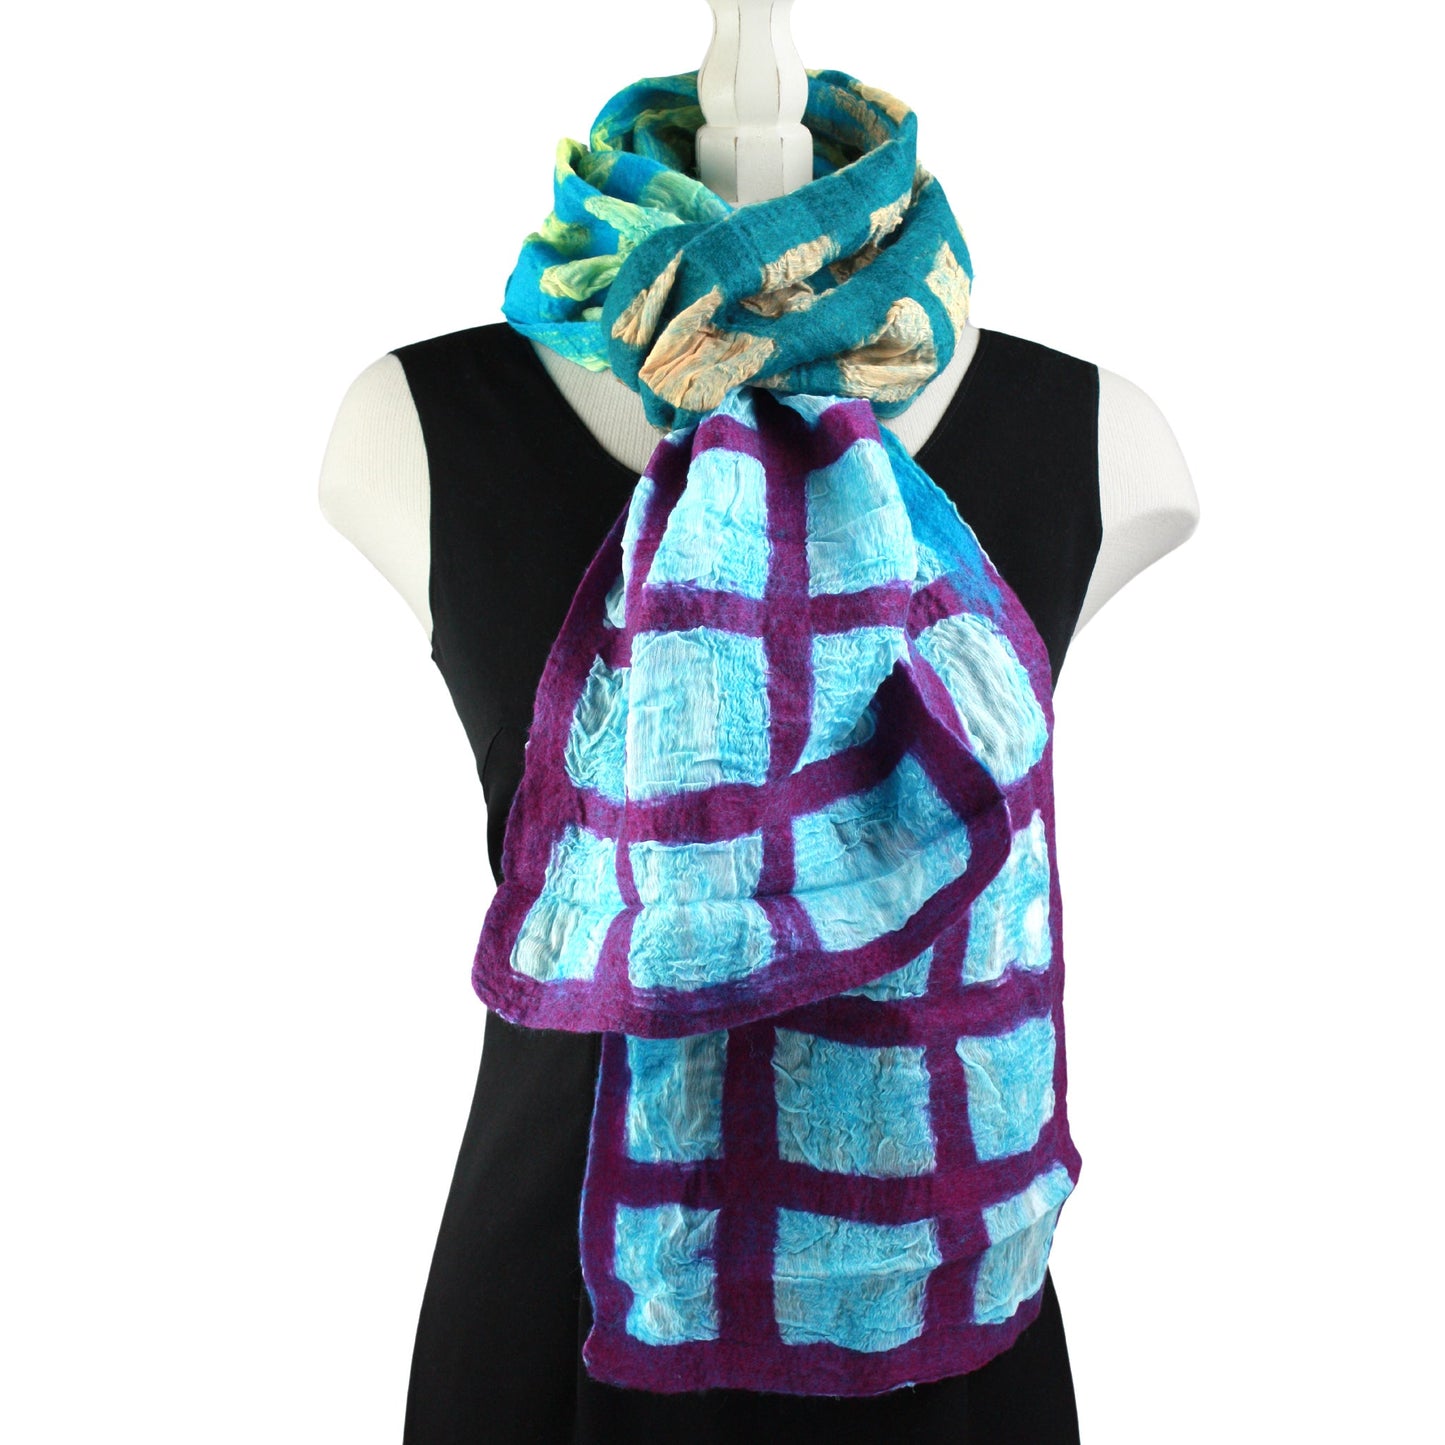 Windowpane scarf in cool tones